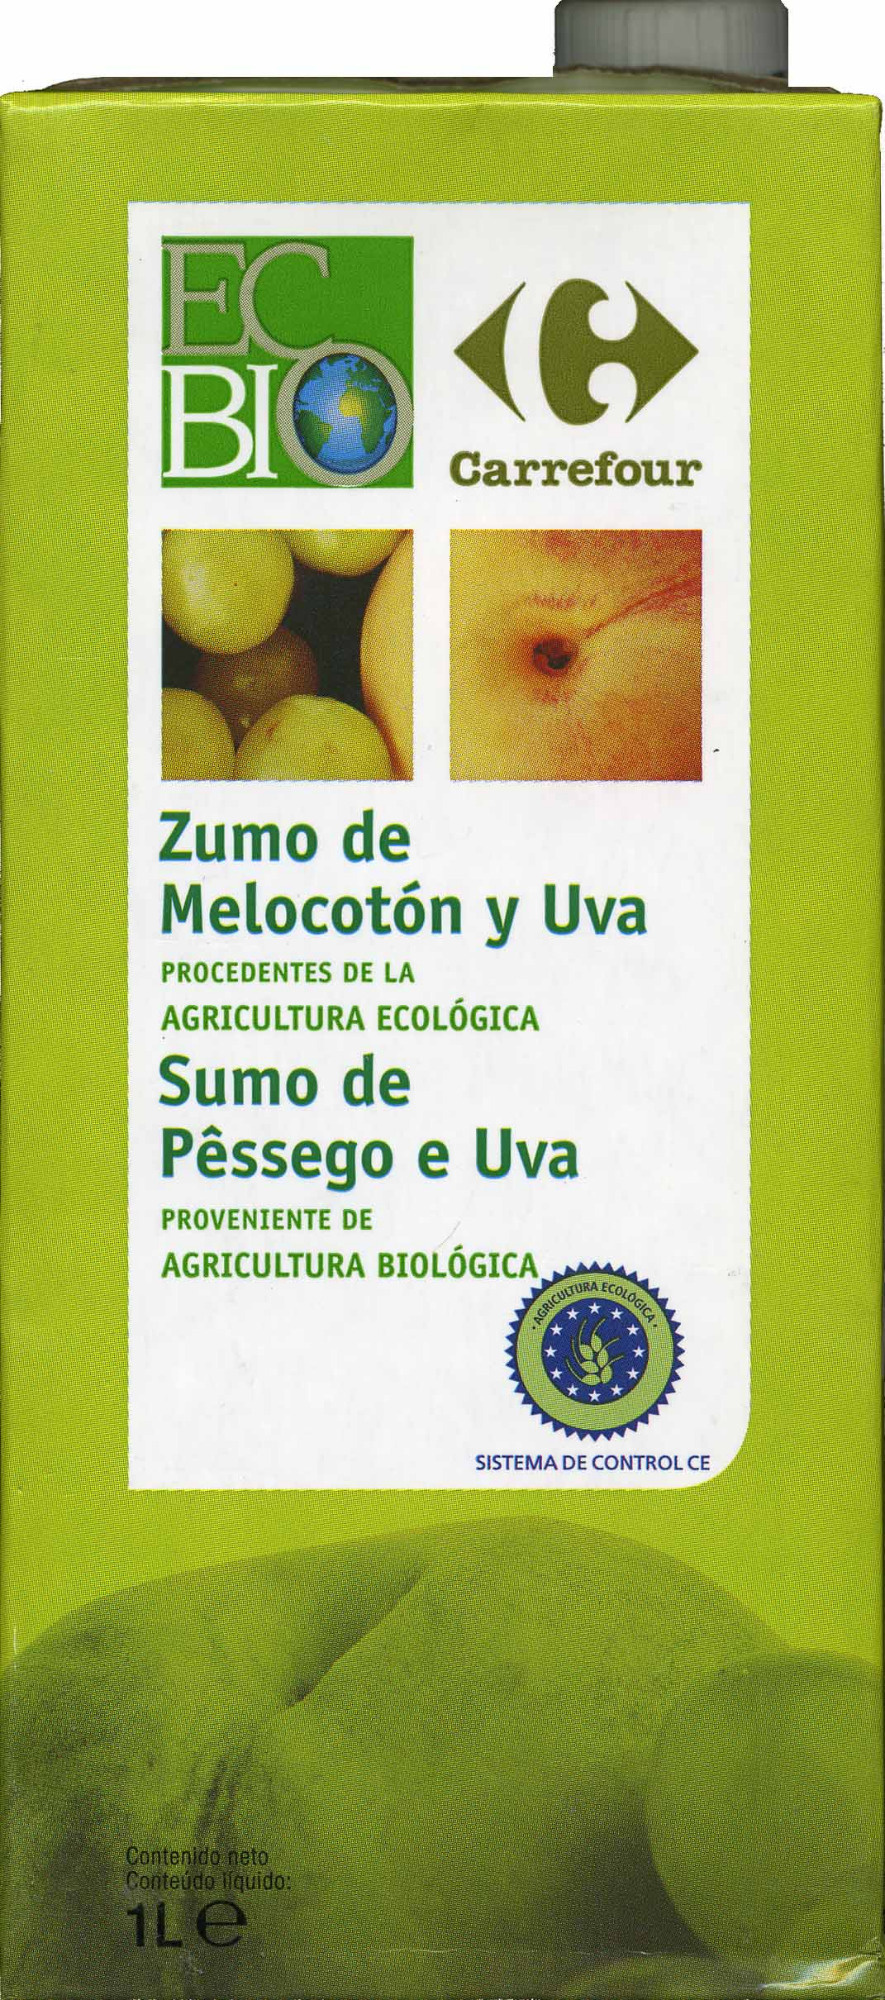 Zumo de melocotón y uva ecológico "Carrefour Bio" - Producte - es